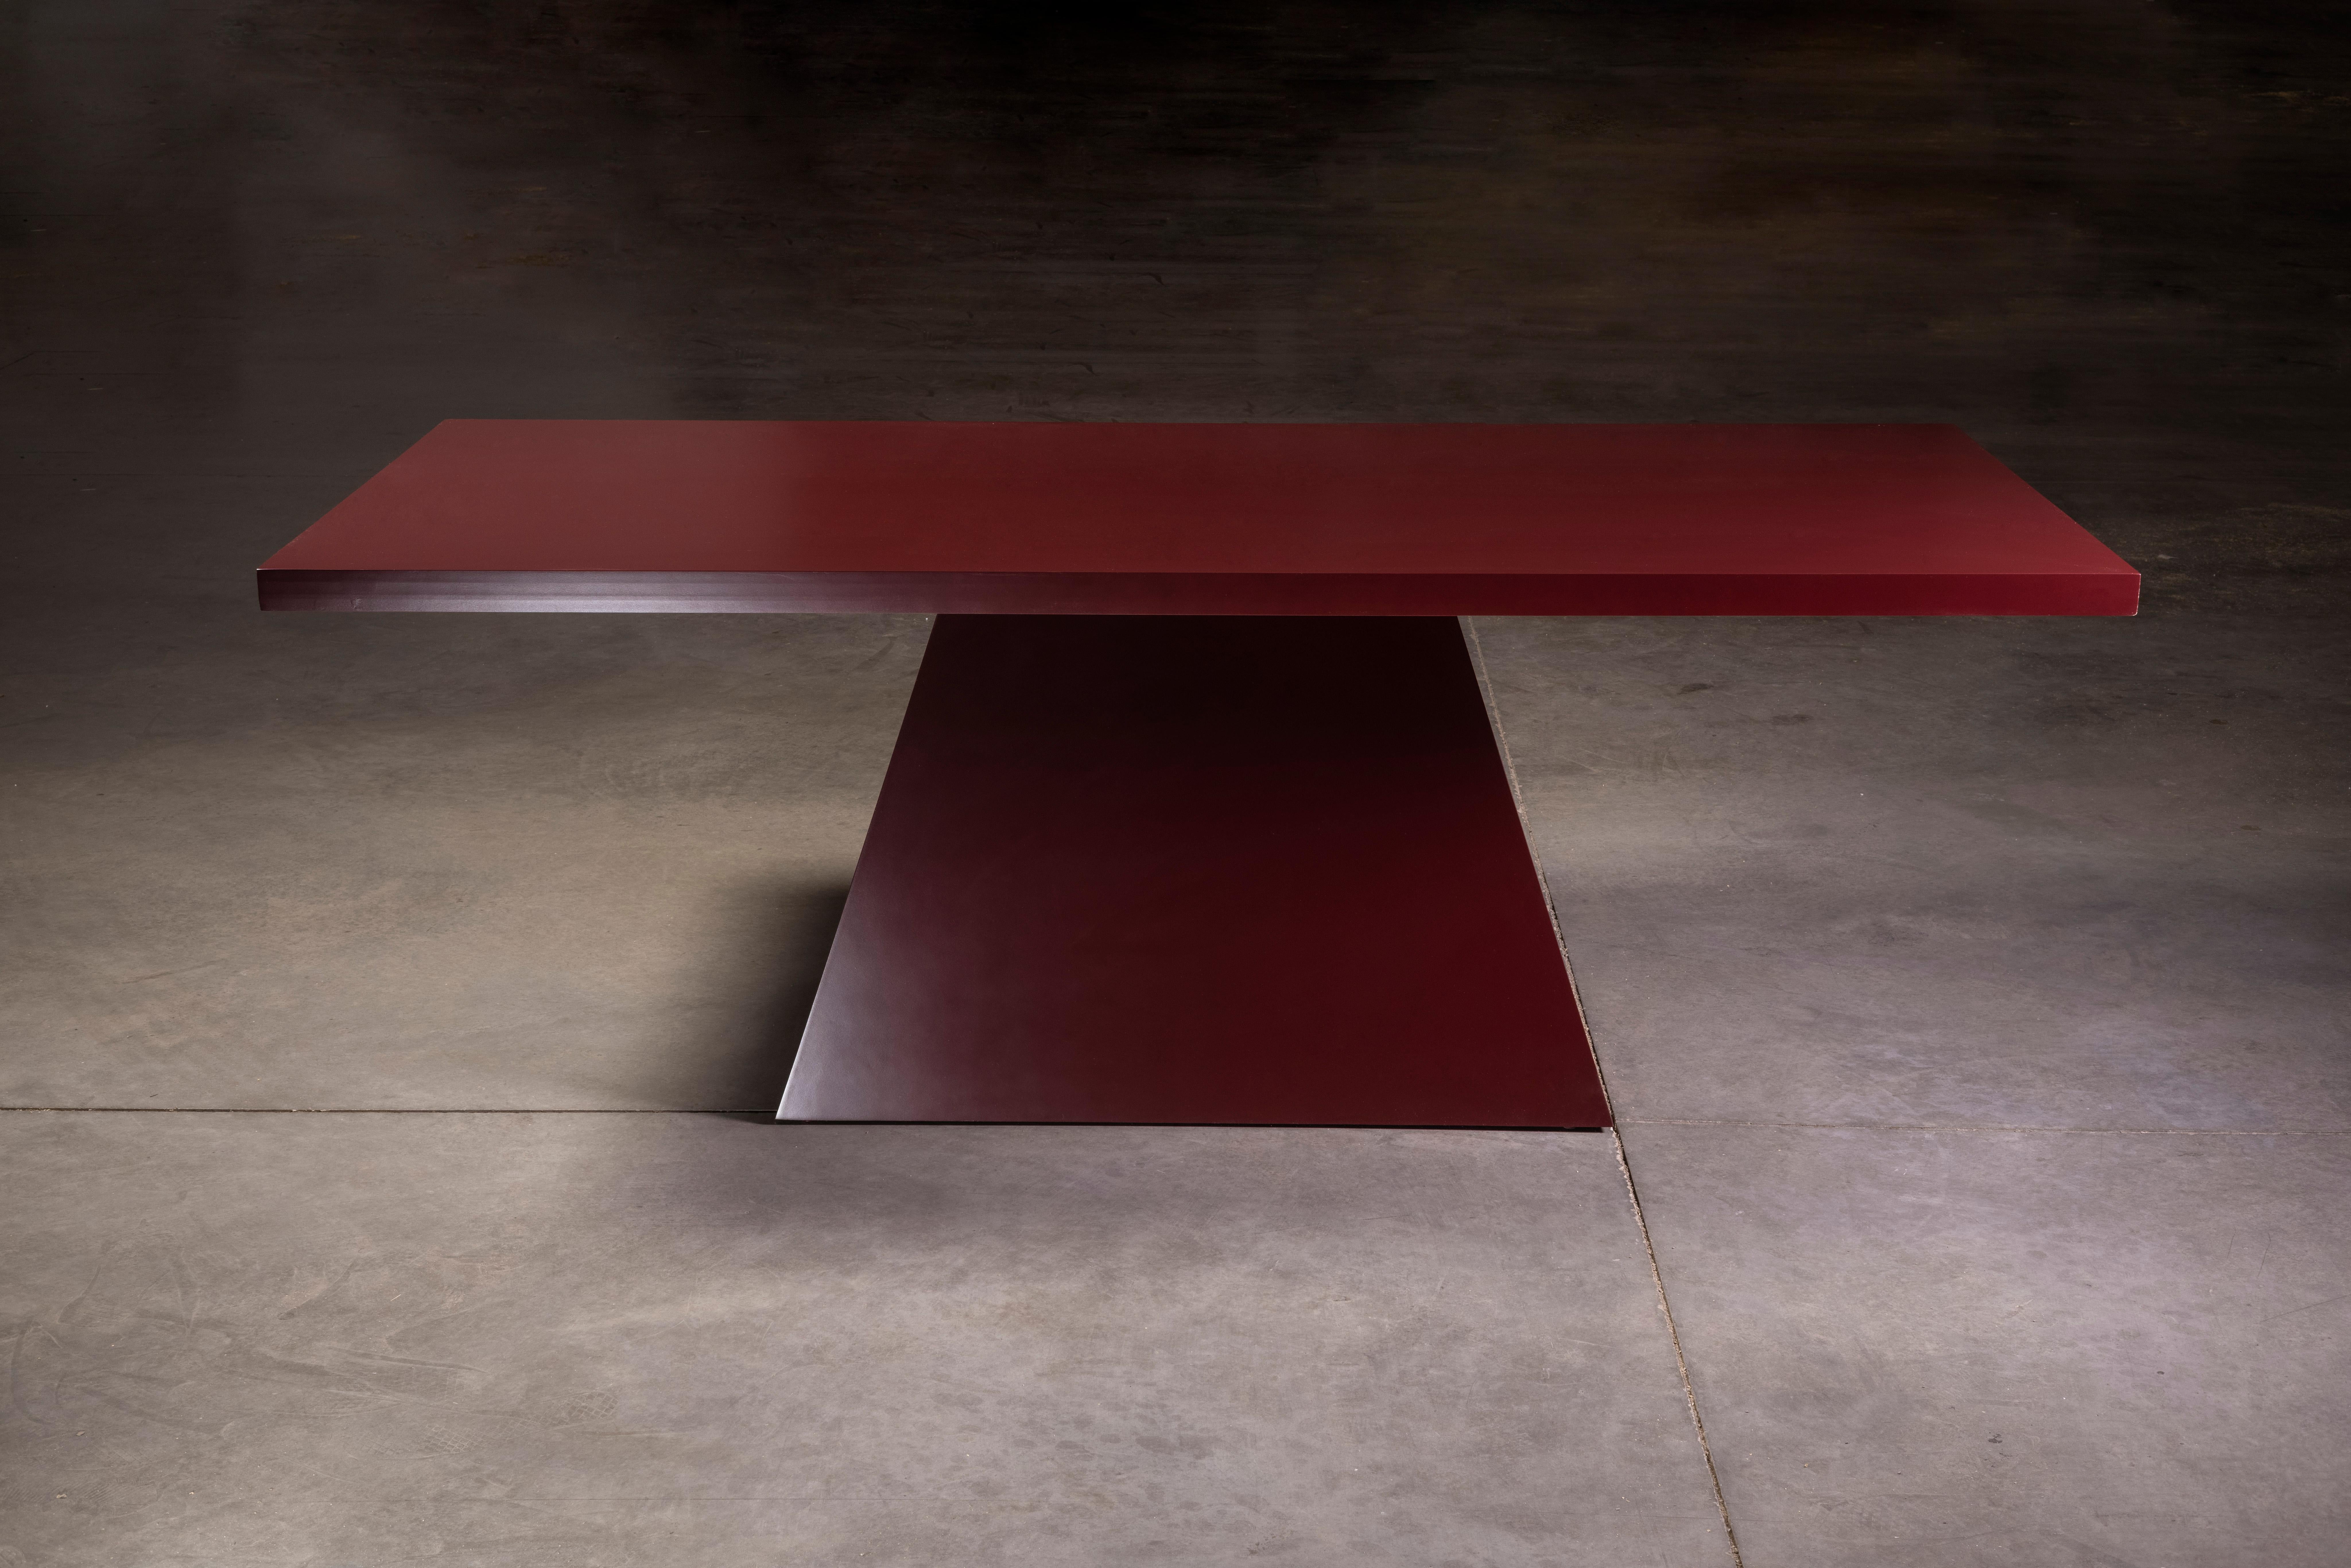 Table de salle à manger moderne et solide, laquée, avec une finition lisse rouge foncé profond et un piédestal triangulaire.

Fabriqué à la main par des artisans mexicains.

Inspiré du mouvement brutaliste des années 1970.